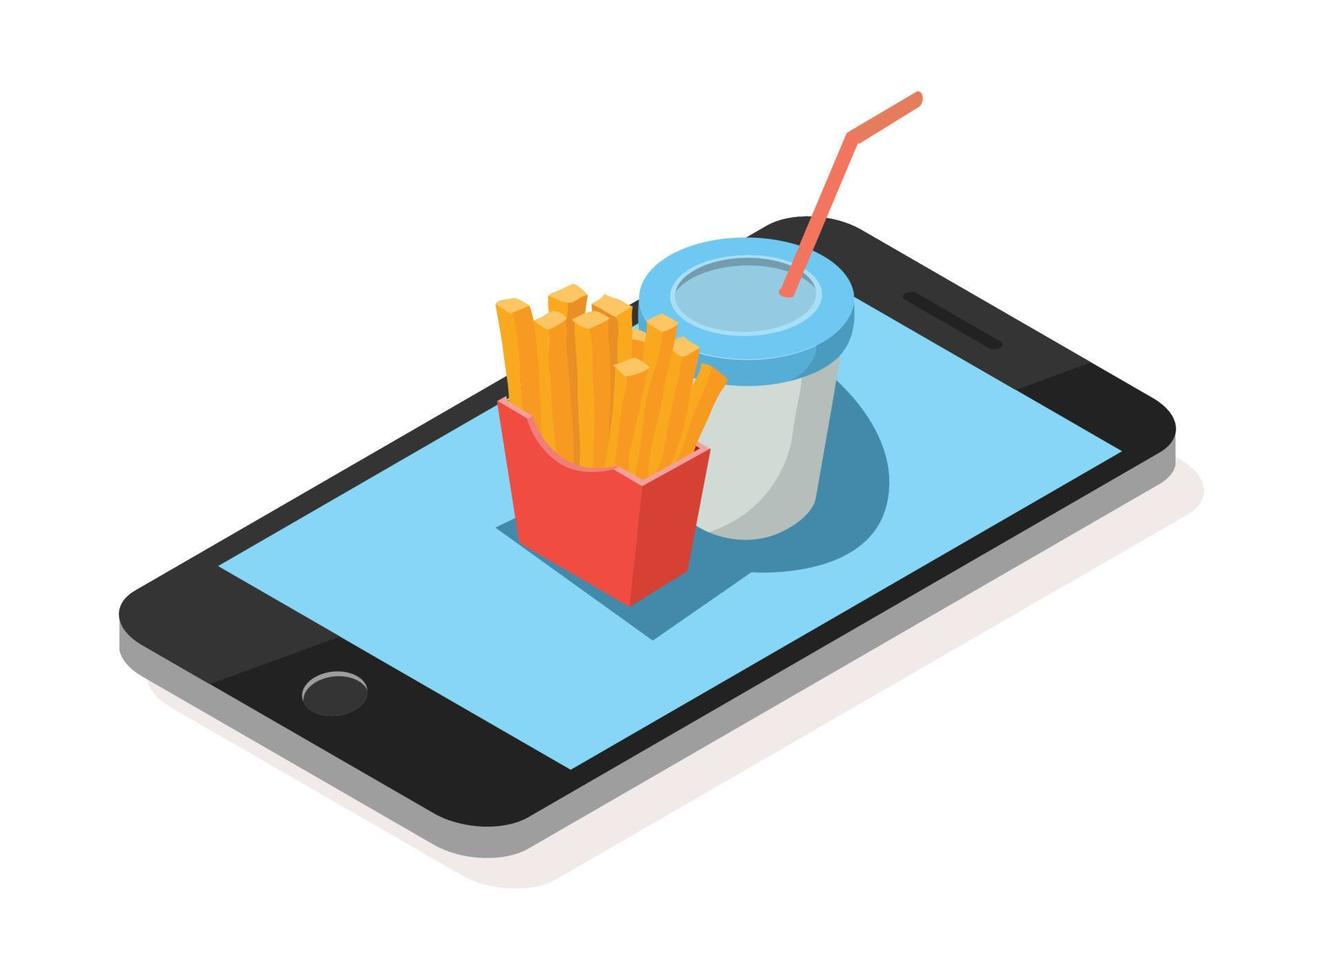 Concepto de vector plano isométrico 3d de aplicación de pedido de comida en línea de restaurante y cafetería con teléfono inteligente. adecuado para diagramas, infografías y otros recursos gráficos